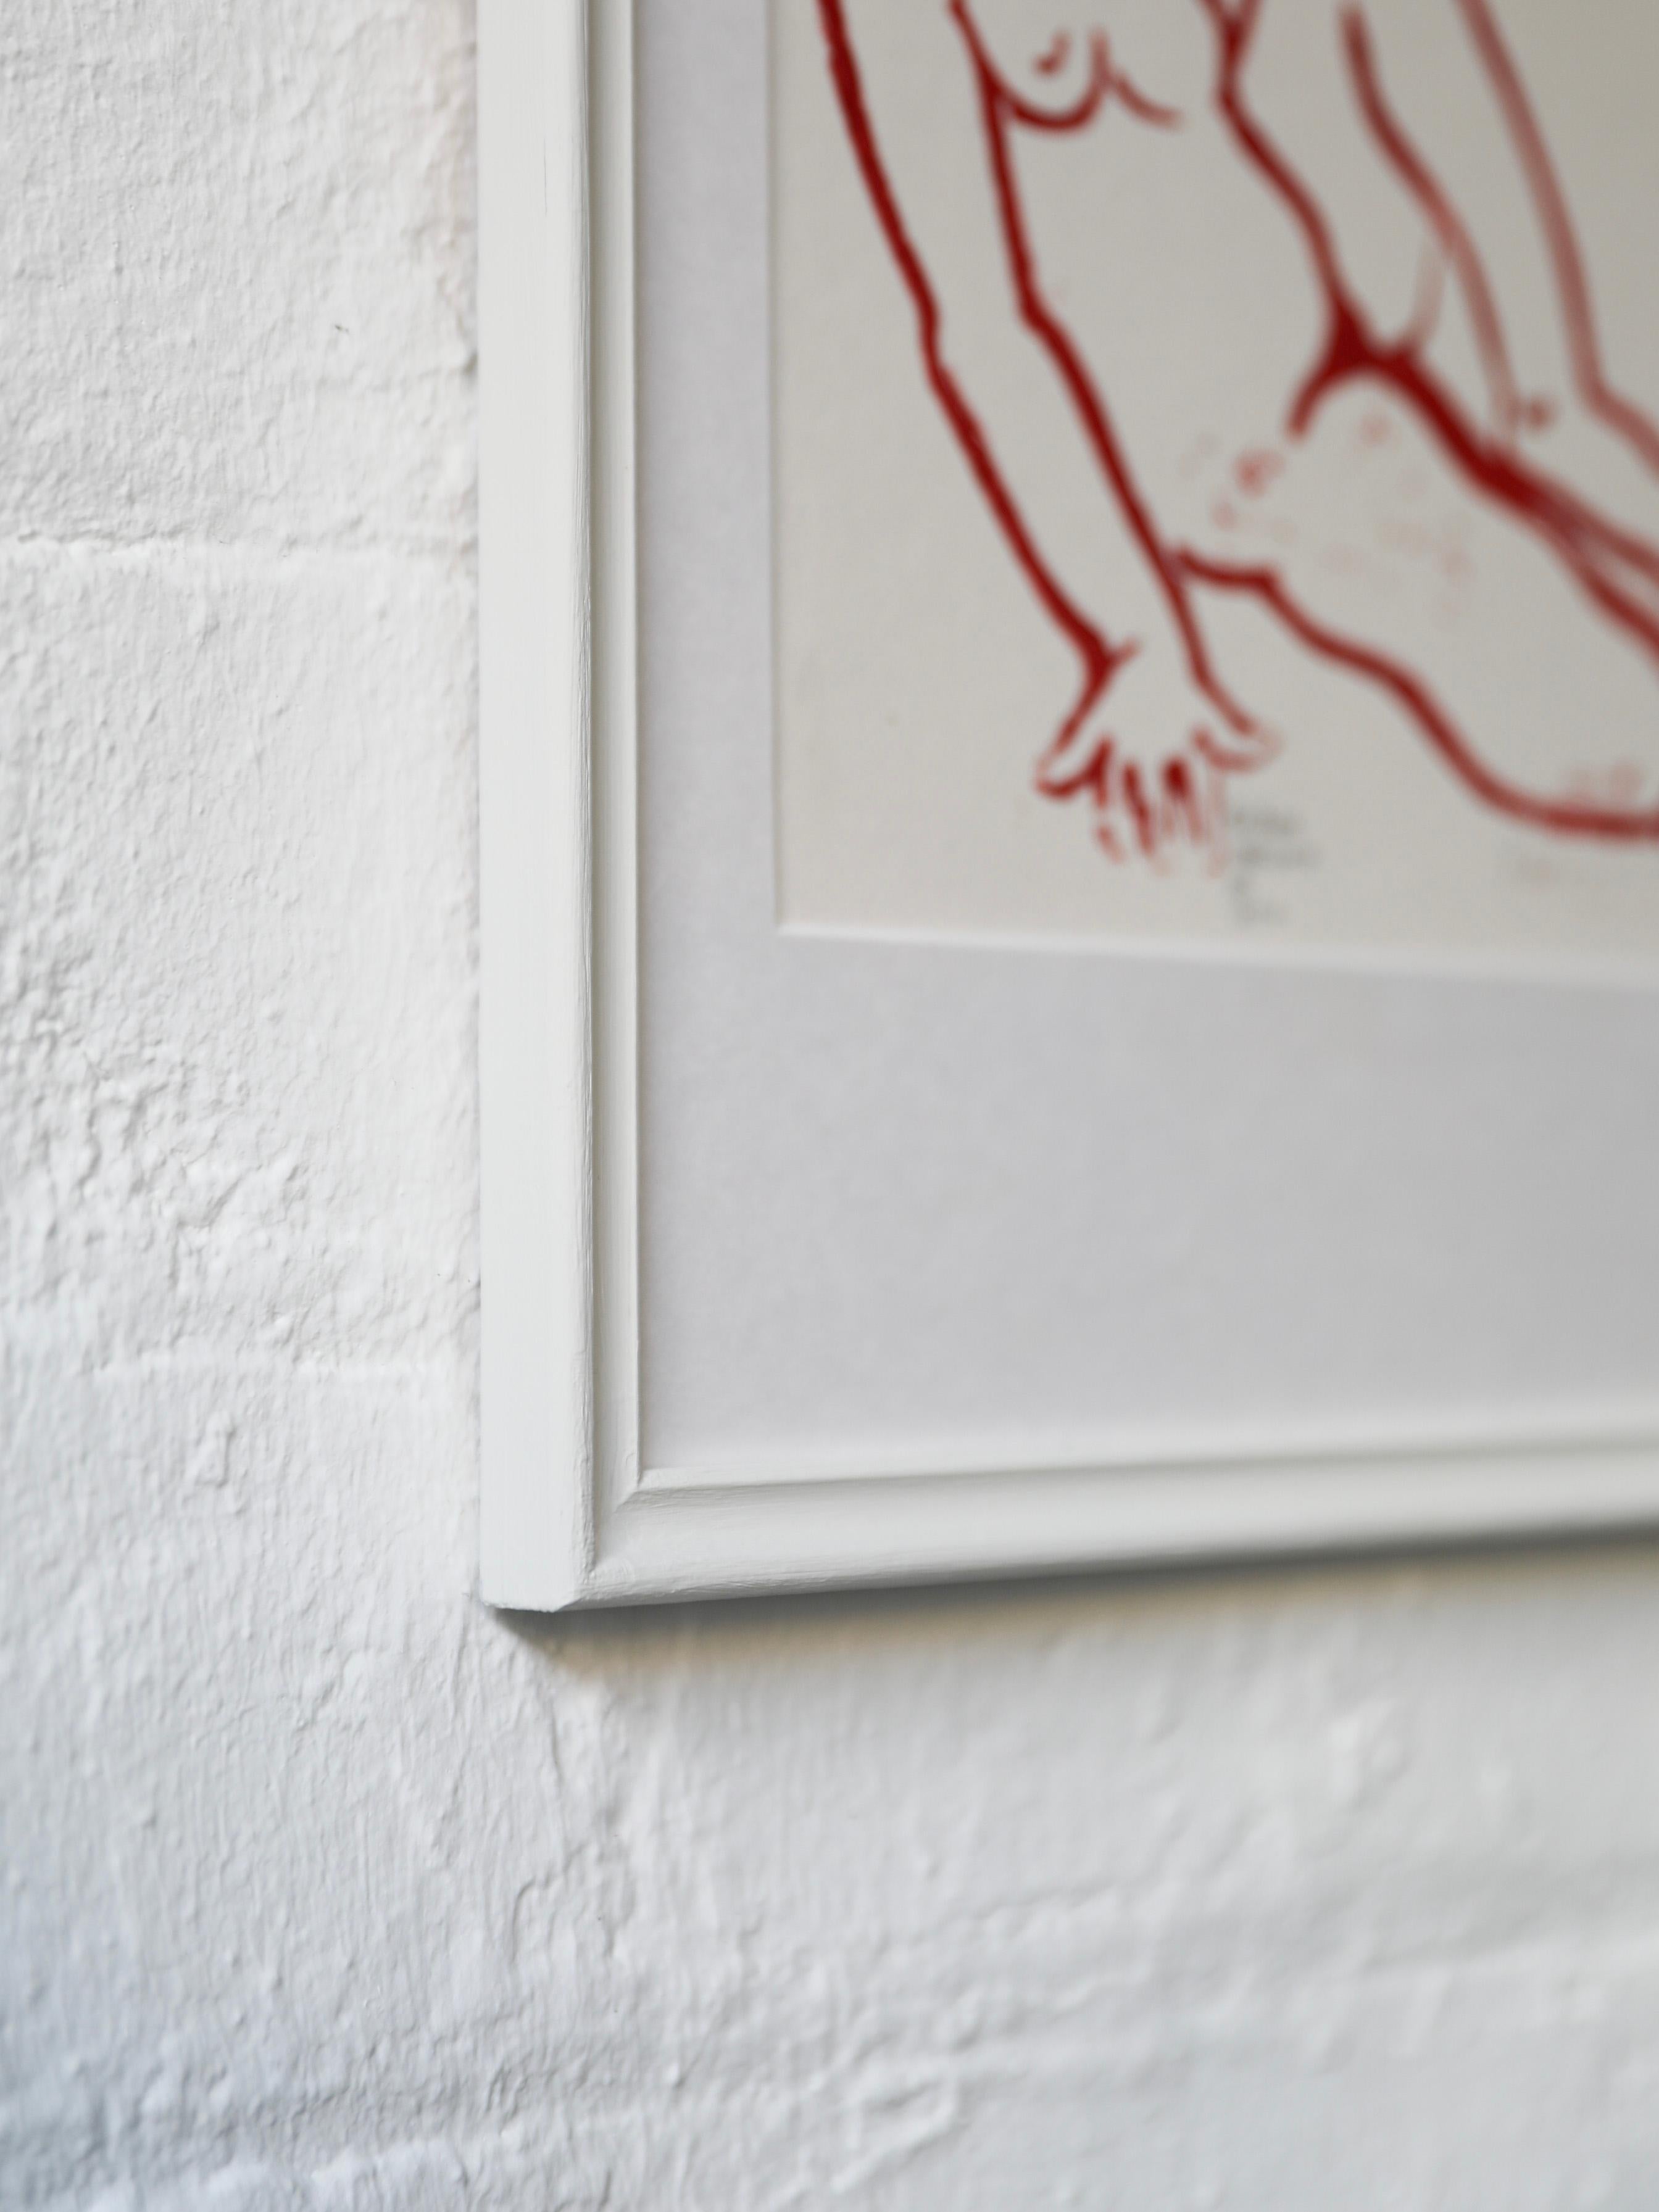 Ein weiblicher Akt, gemalt in roter Acrylfarbe auf Papier. Undeutlich rechts unten vom Künstler signiert. Passepartout, verglast und gerahmt in einem gestrichenen cremefarbenen Rahmen.

Künstler: Unleserlich signiert
Medium: Acryl auf